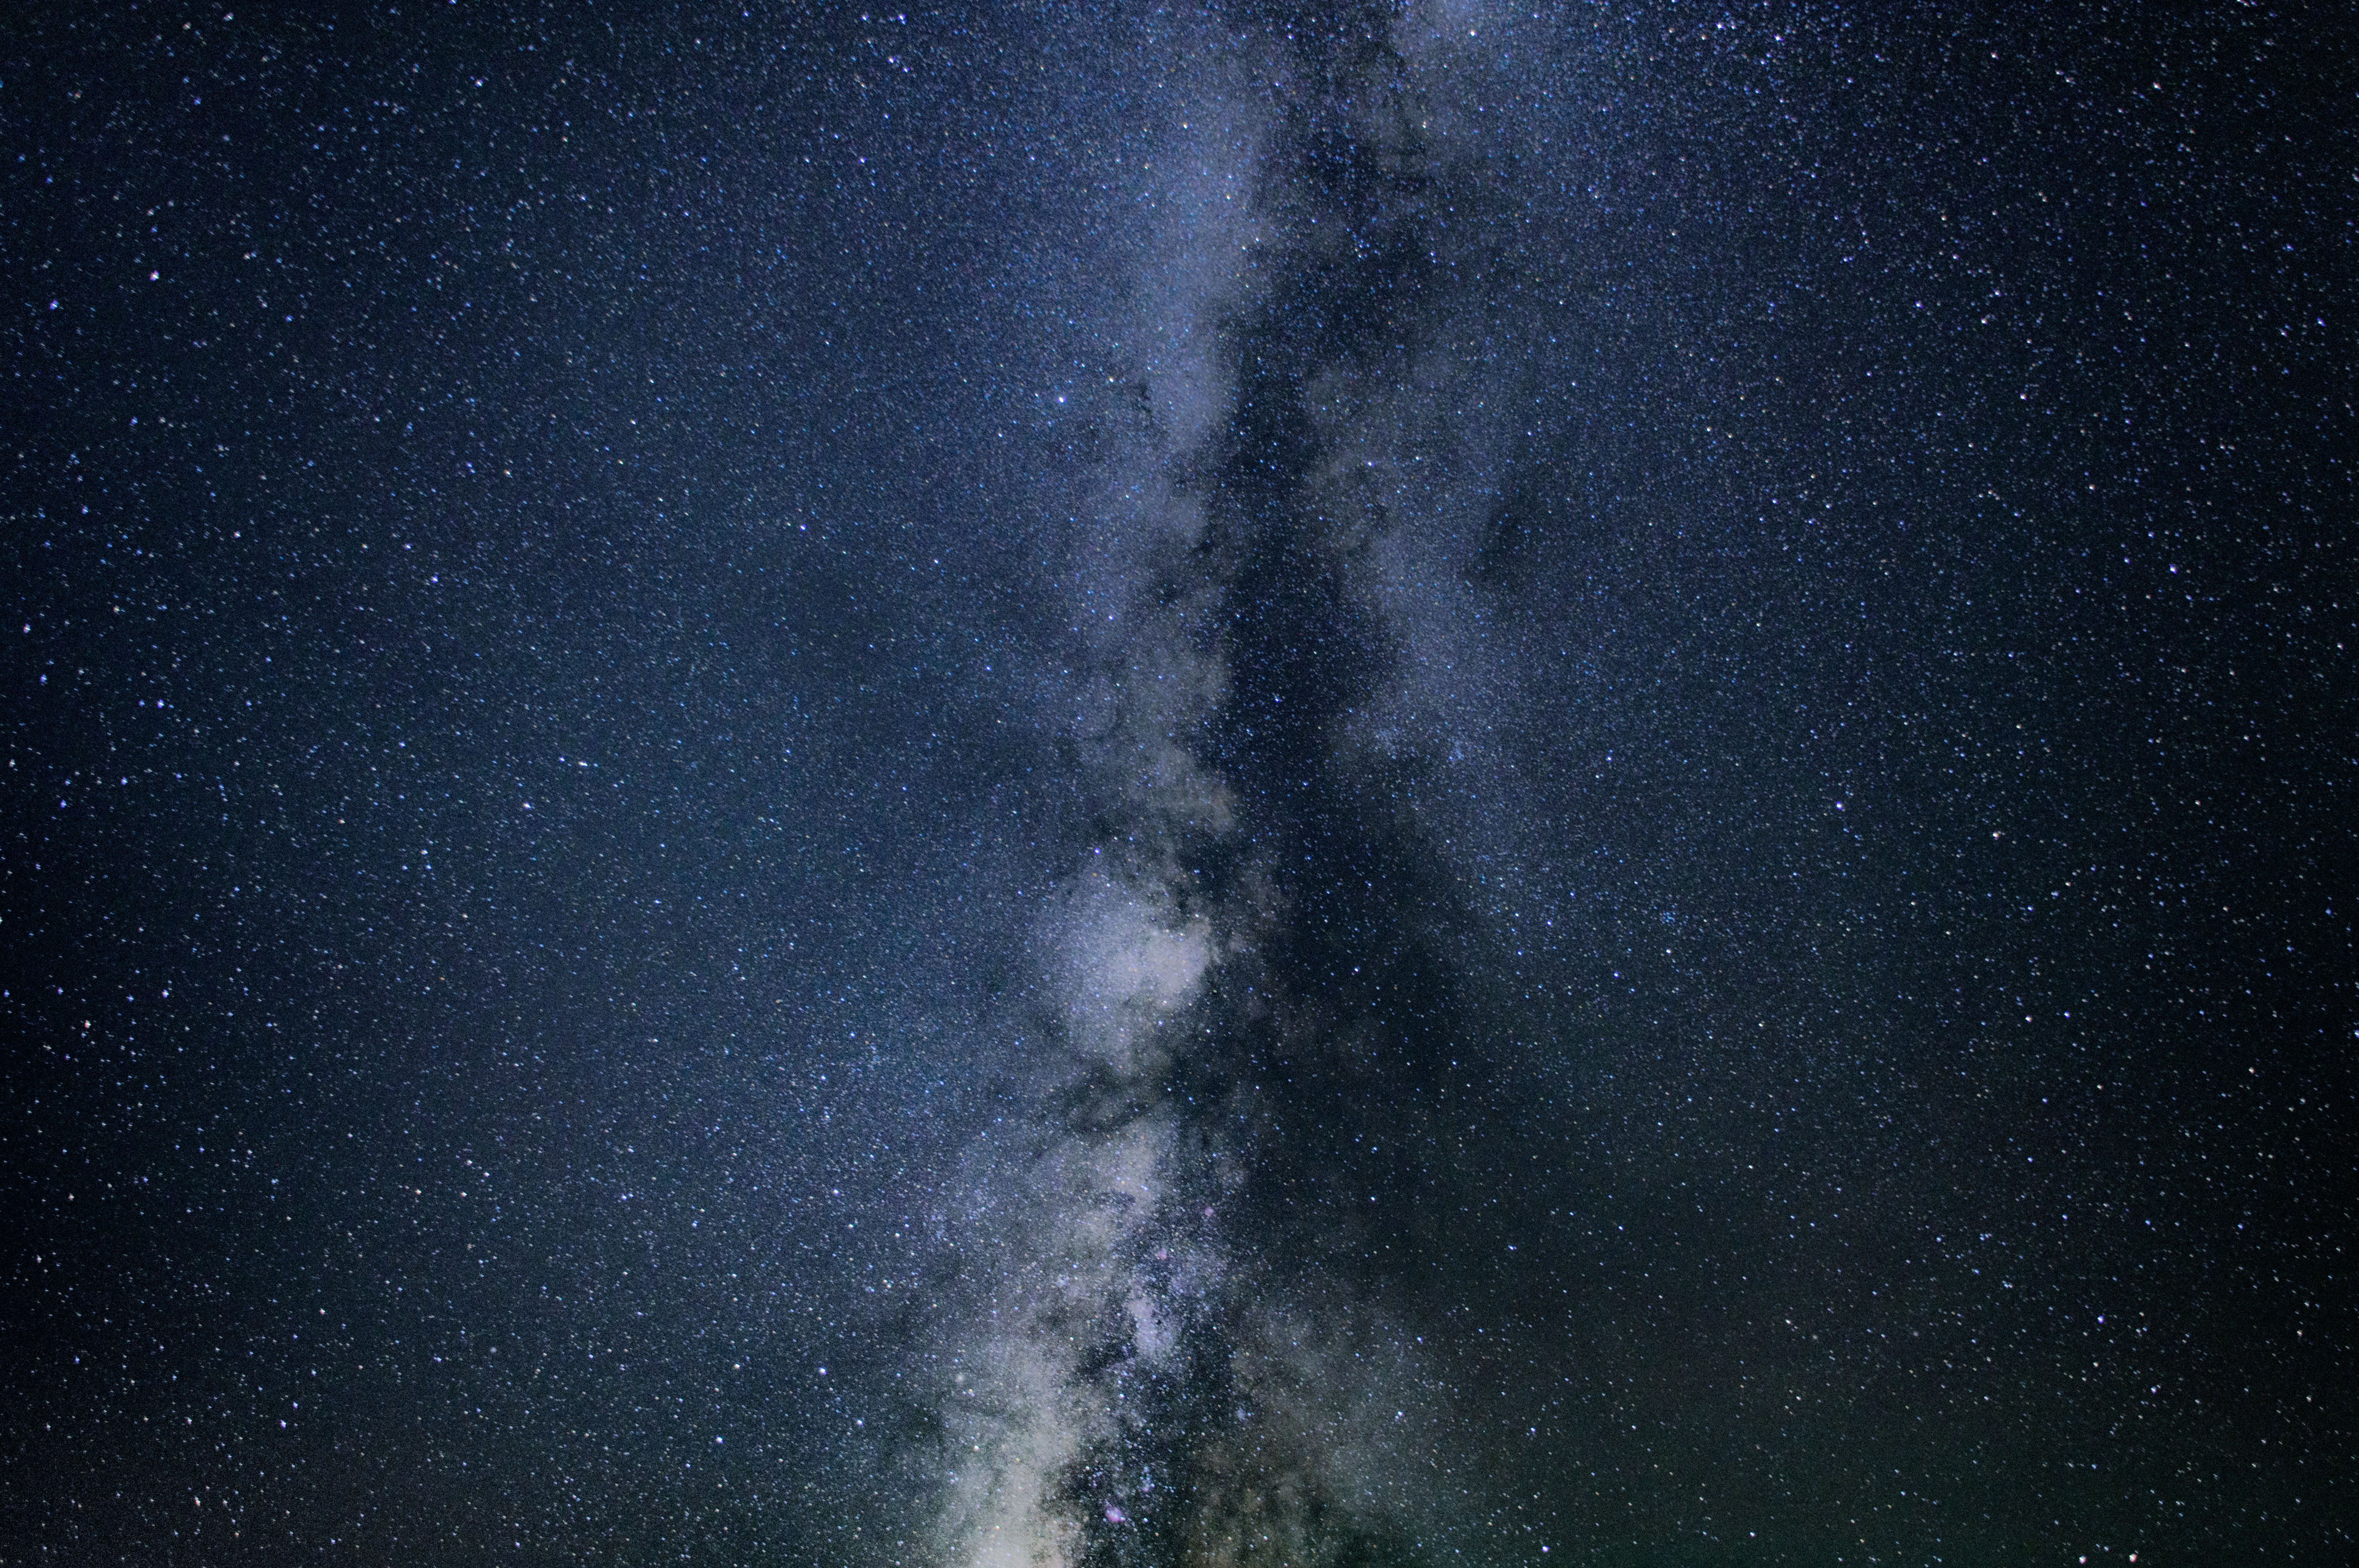 Бесплатное фото Ночное небо со звездами и Млечным путем